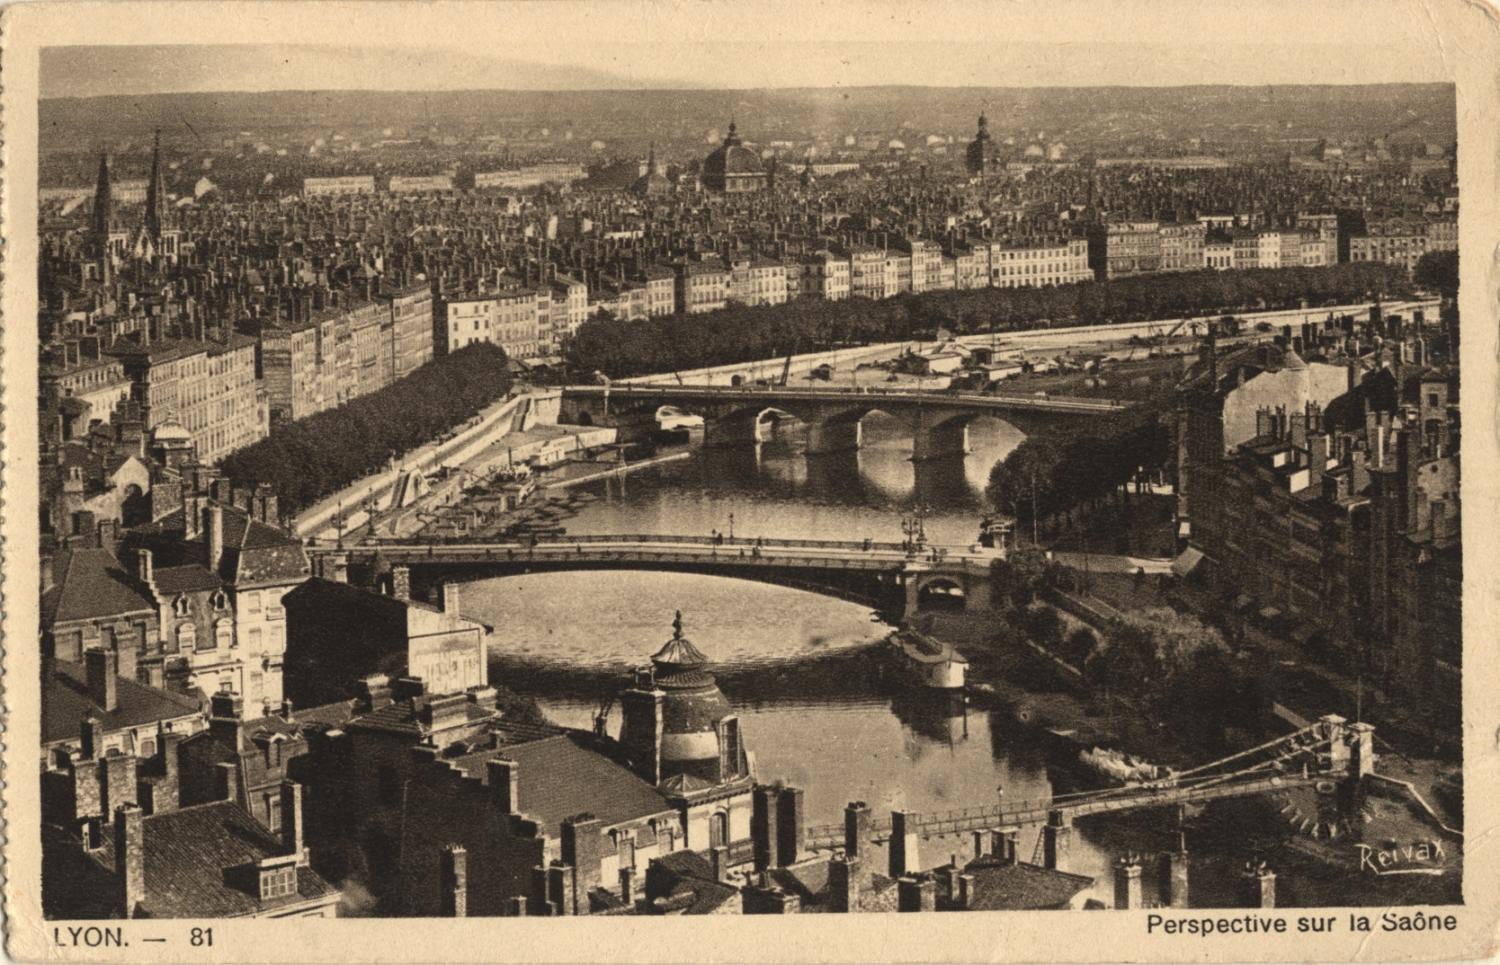 Lyon. - Perspective sur la Saône